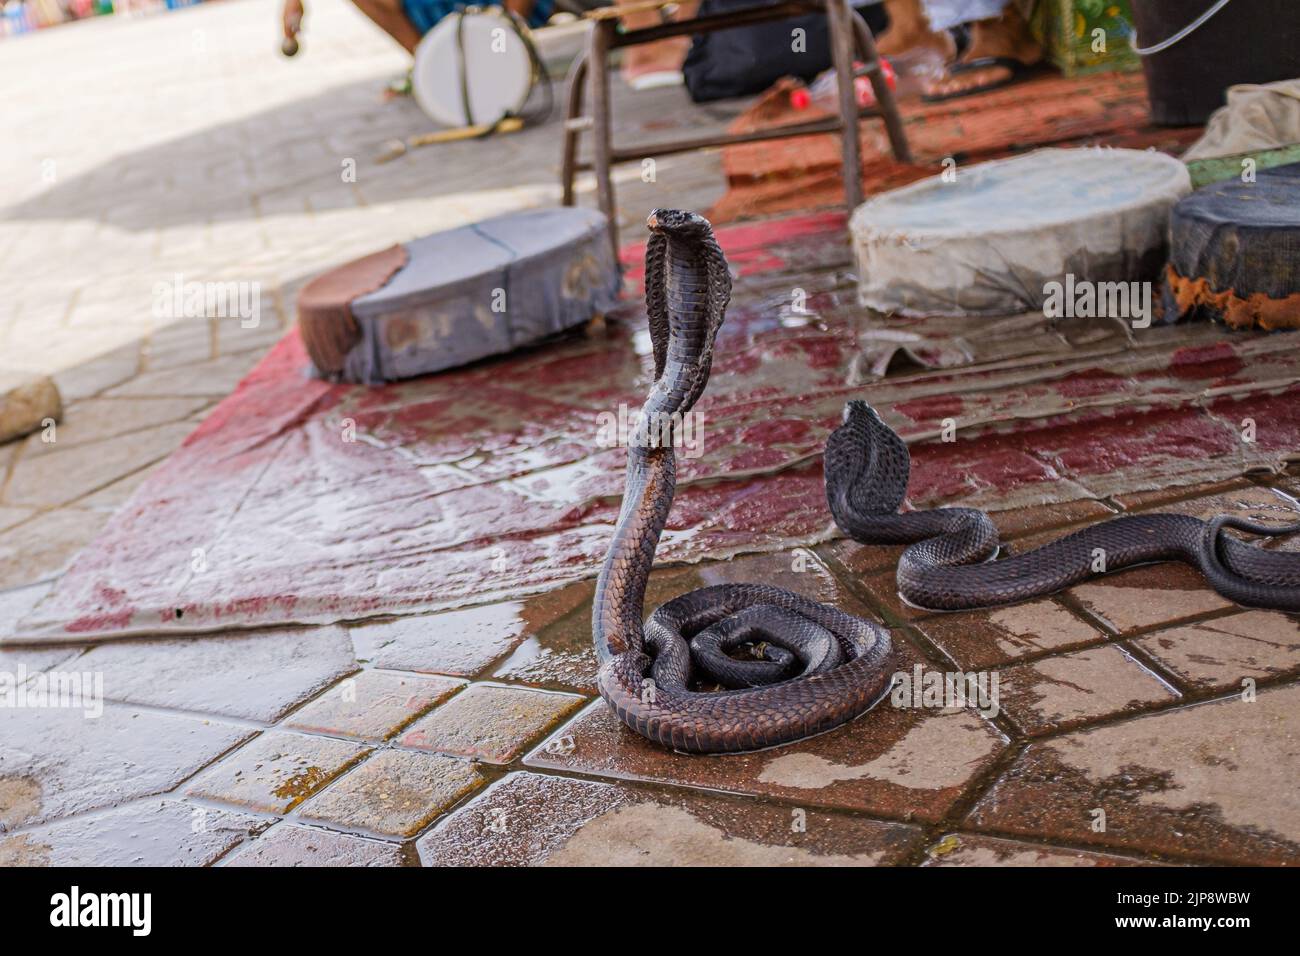 Black tamed cobra snake on cobra pose in an exotic market in Marrakesh Stock Photo